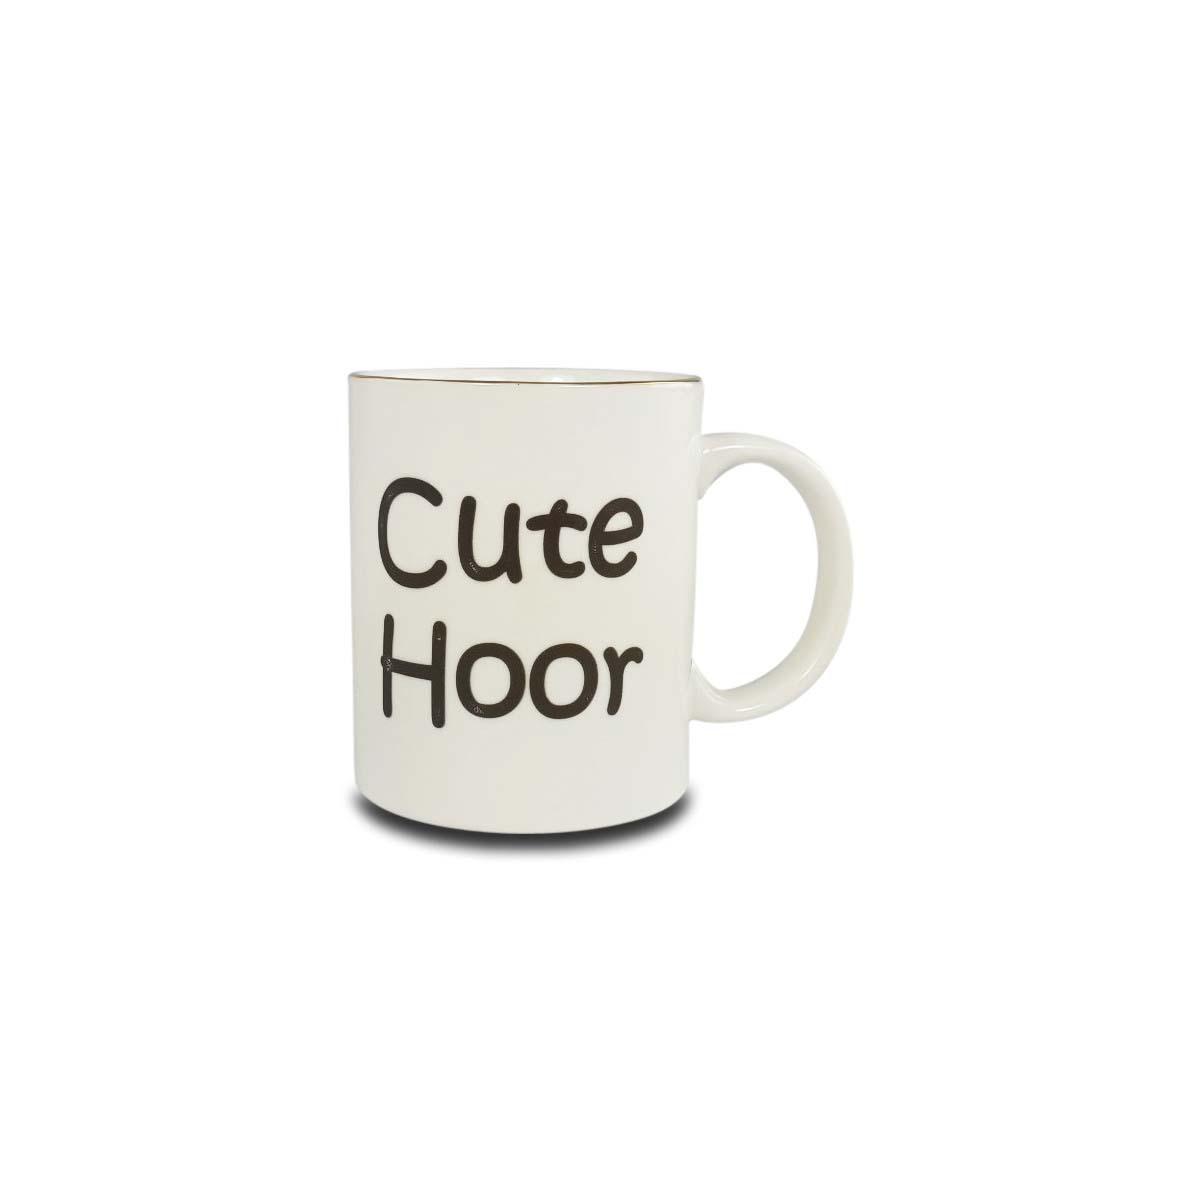 Cute Hoor' Mug